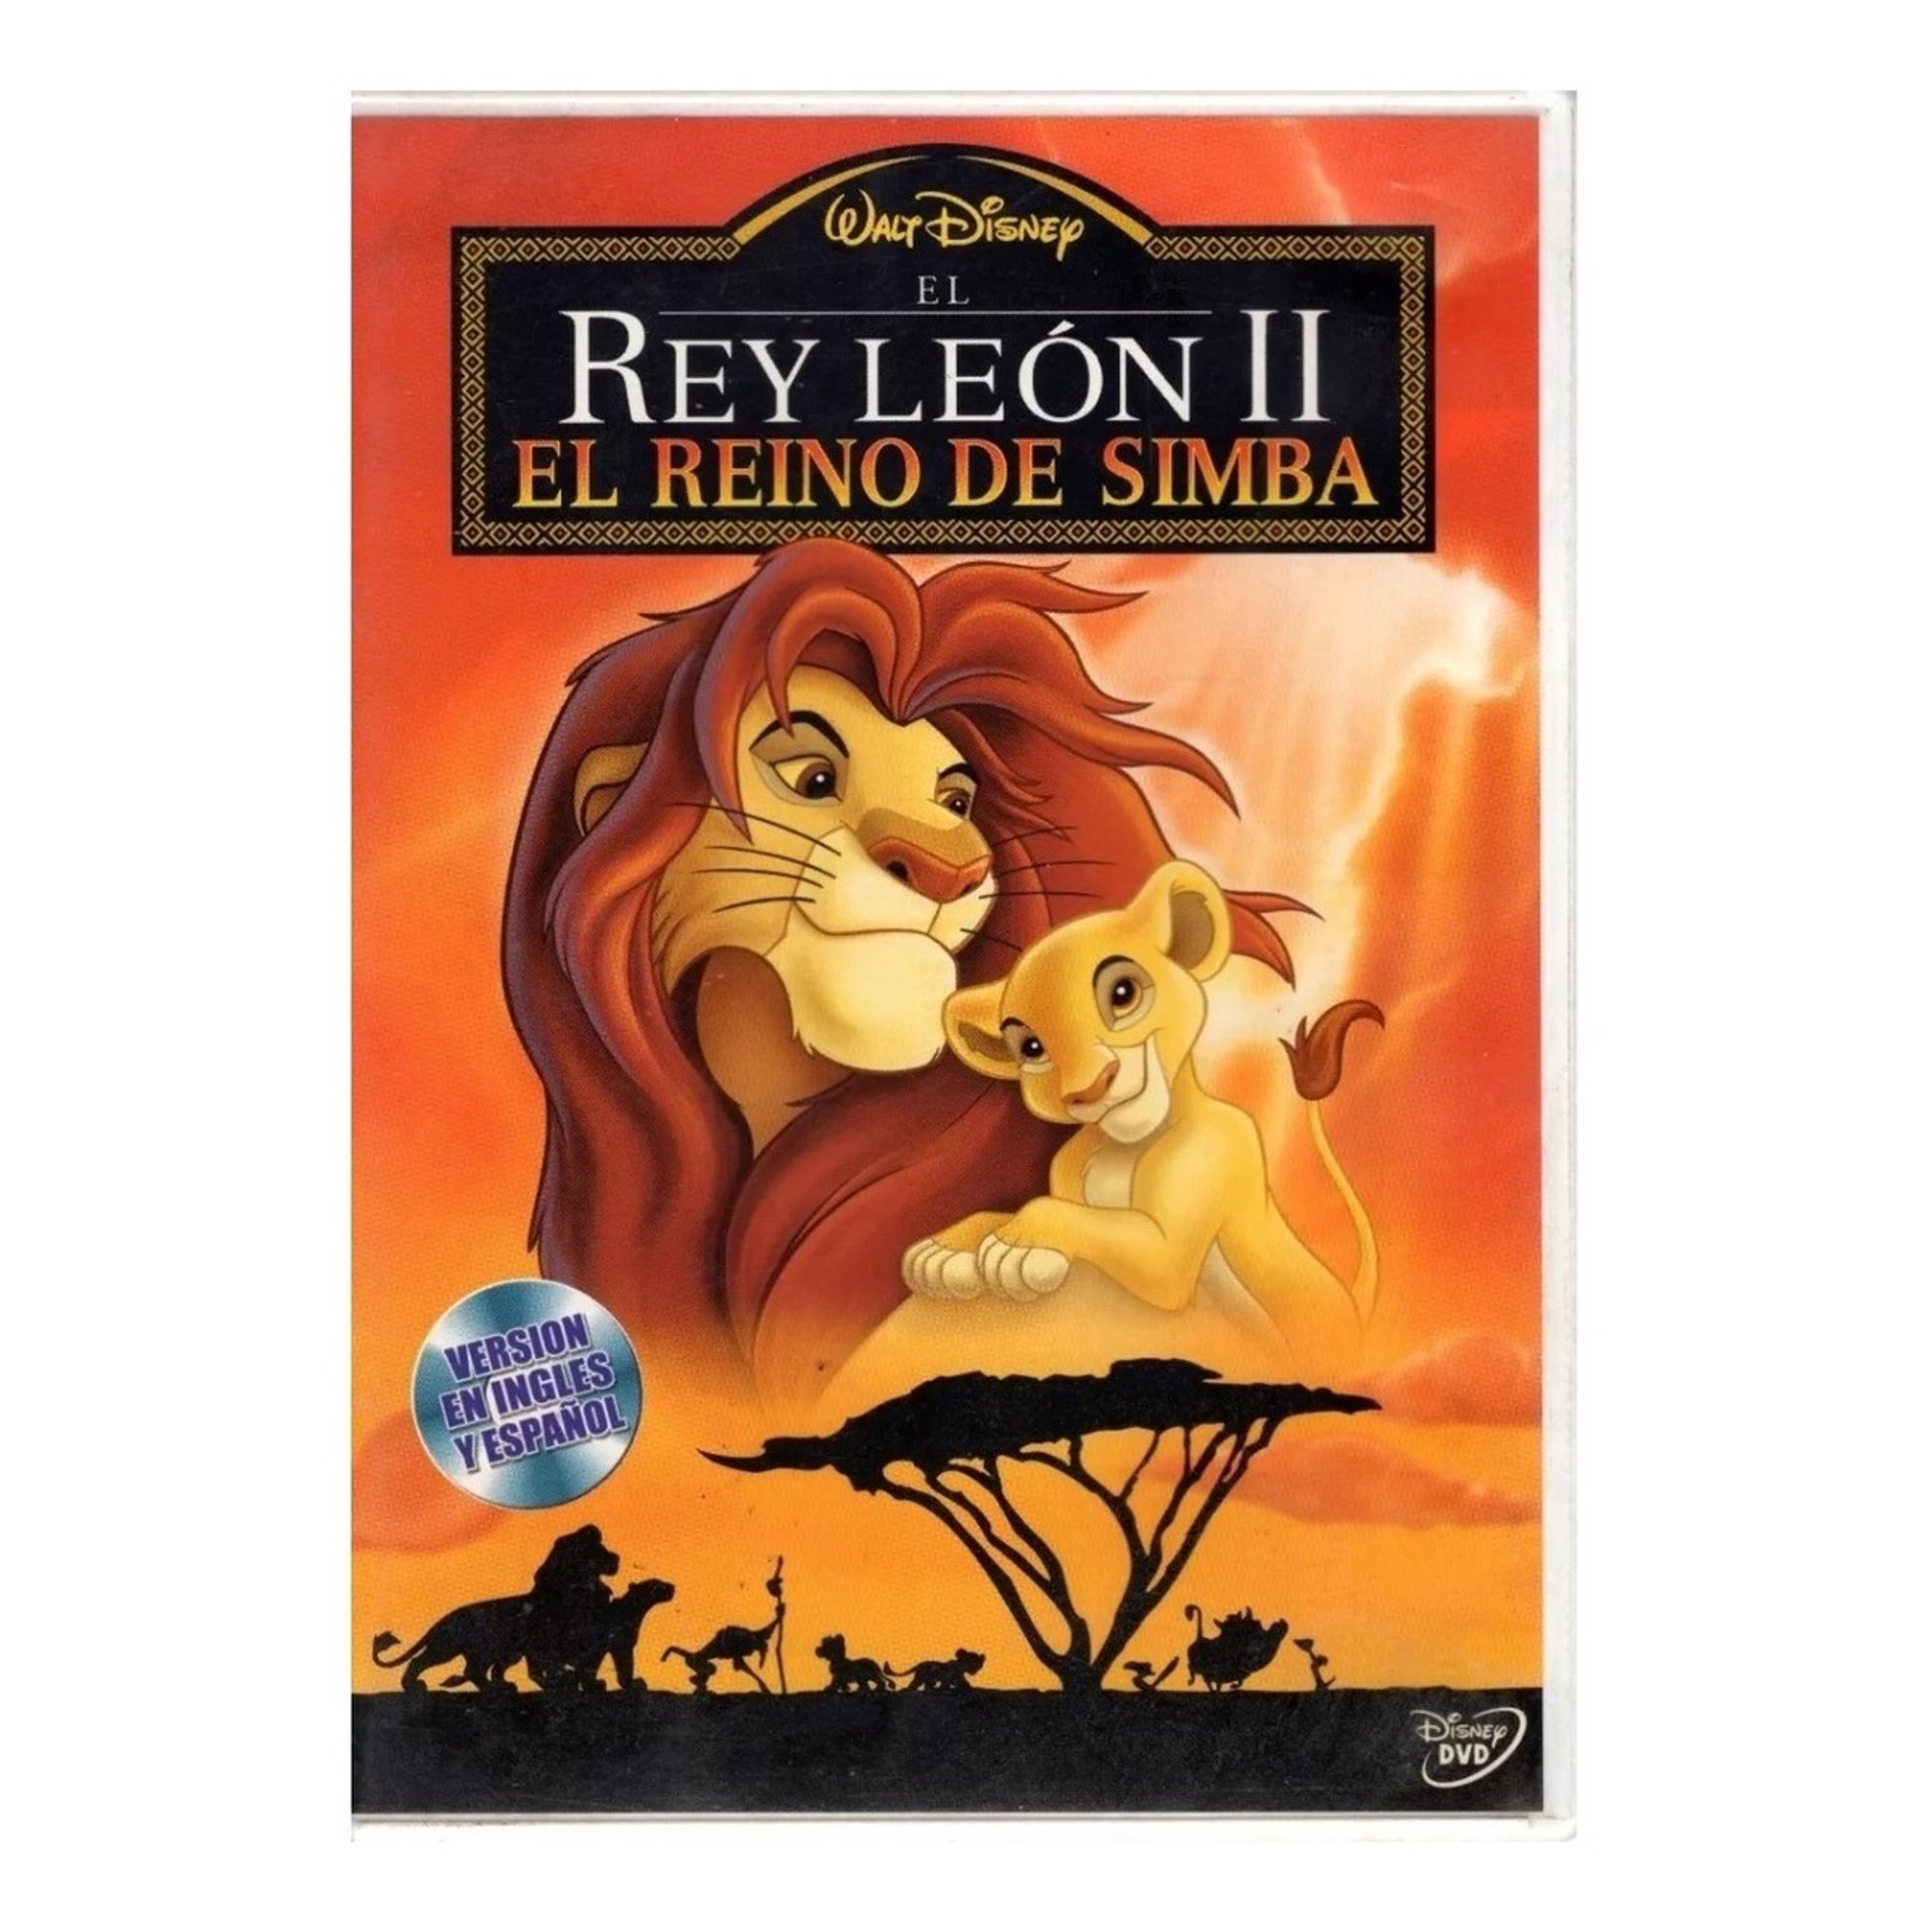 El Rey Leon 2 Dos El Reino De Simba Pelicula Dvd Disney Pixar El Rey Leon 2 Dos El Reino De 0271